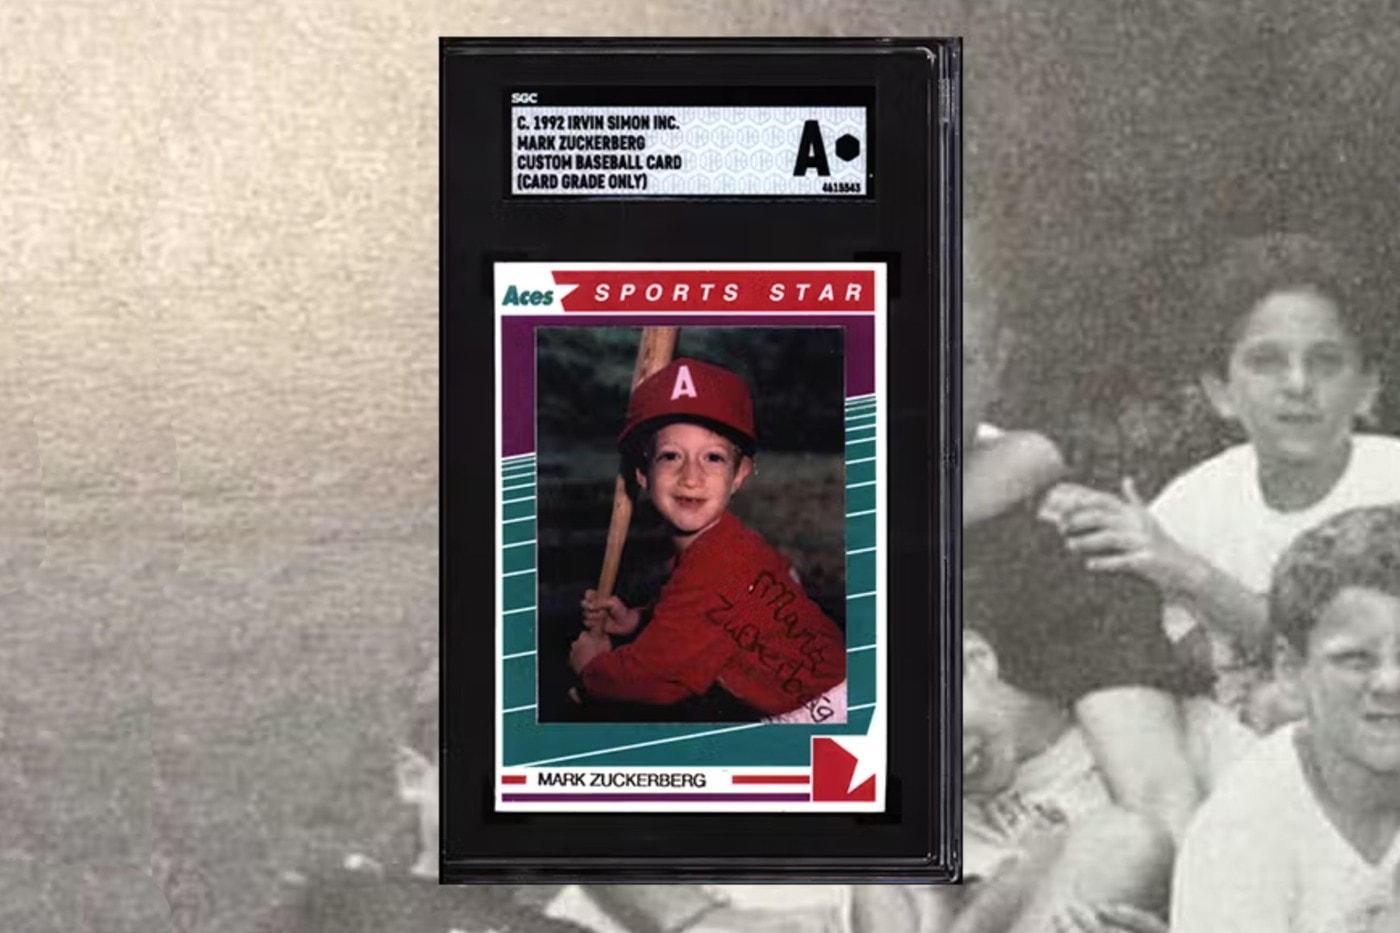 曾經的棒球夢？Mark Zuckerberg 童年特製棒球卡將公開拍賣